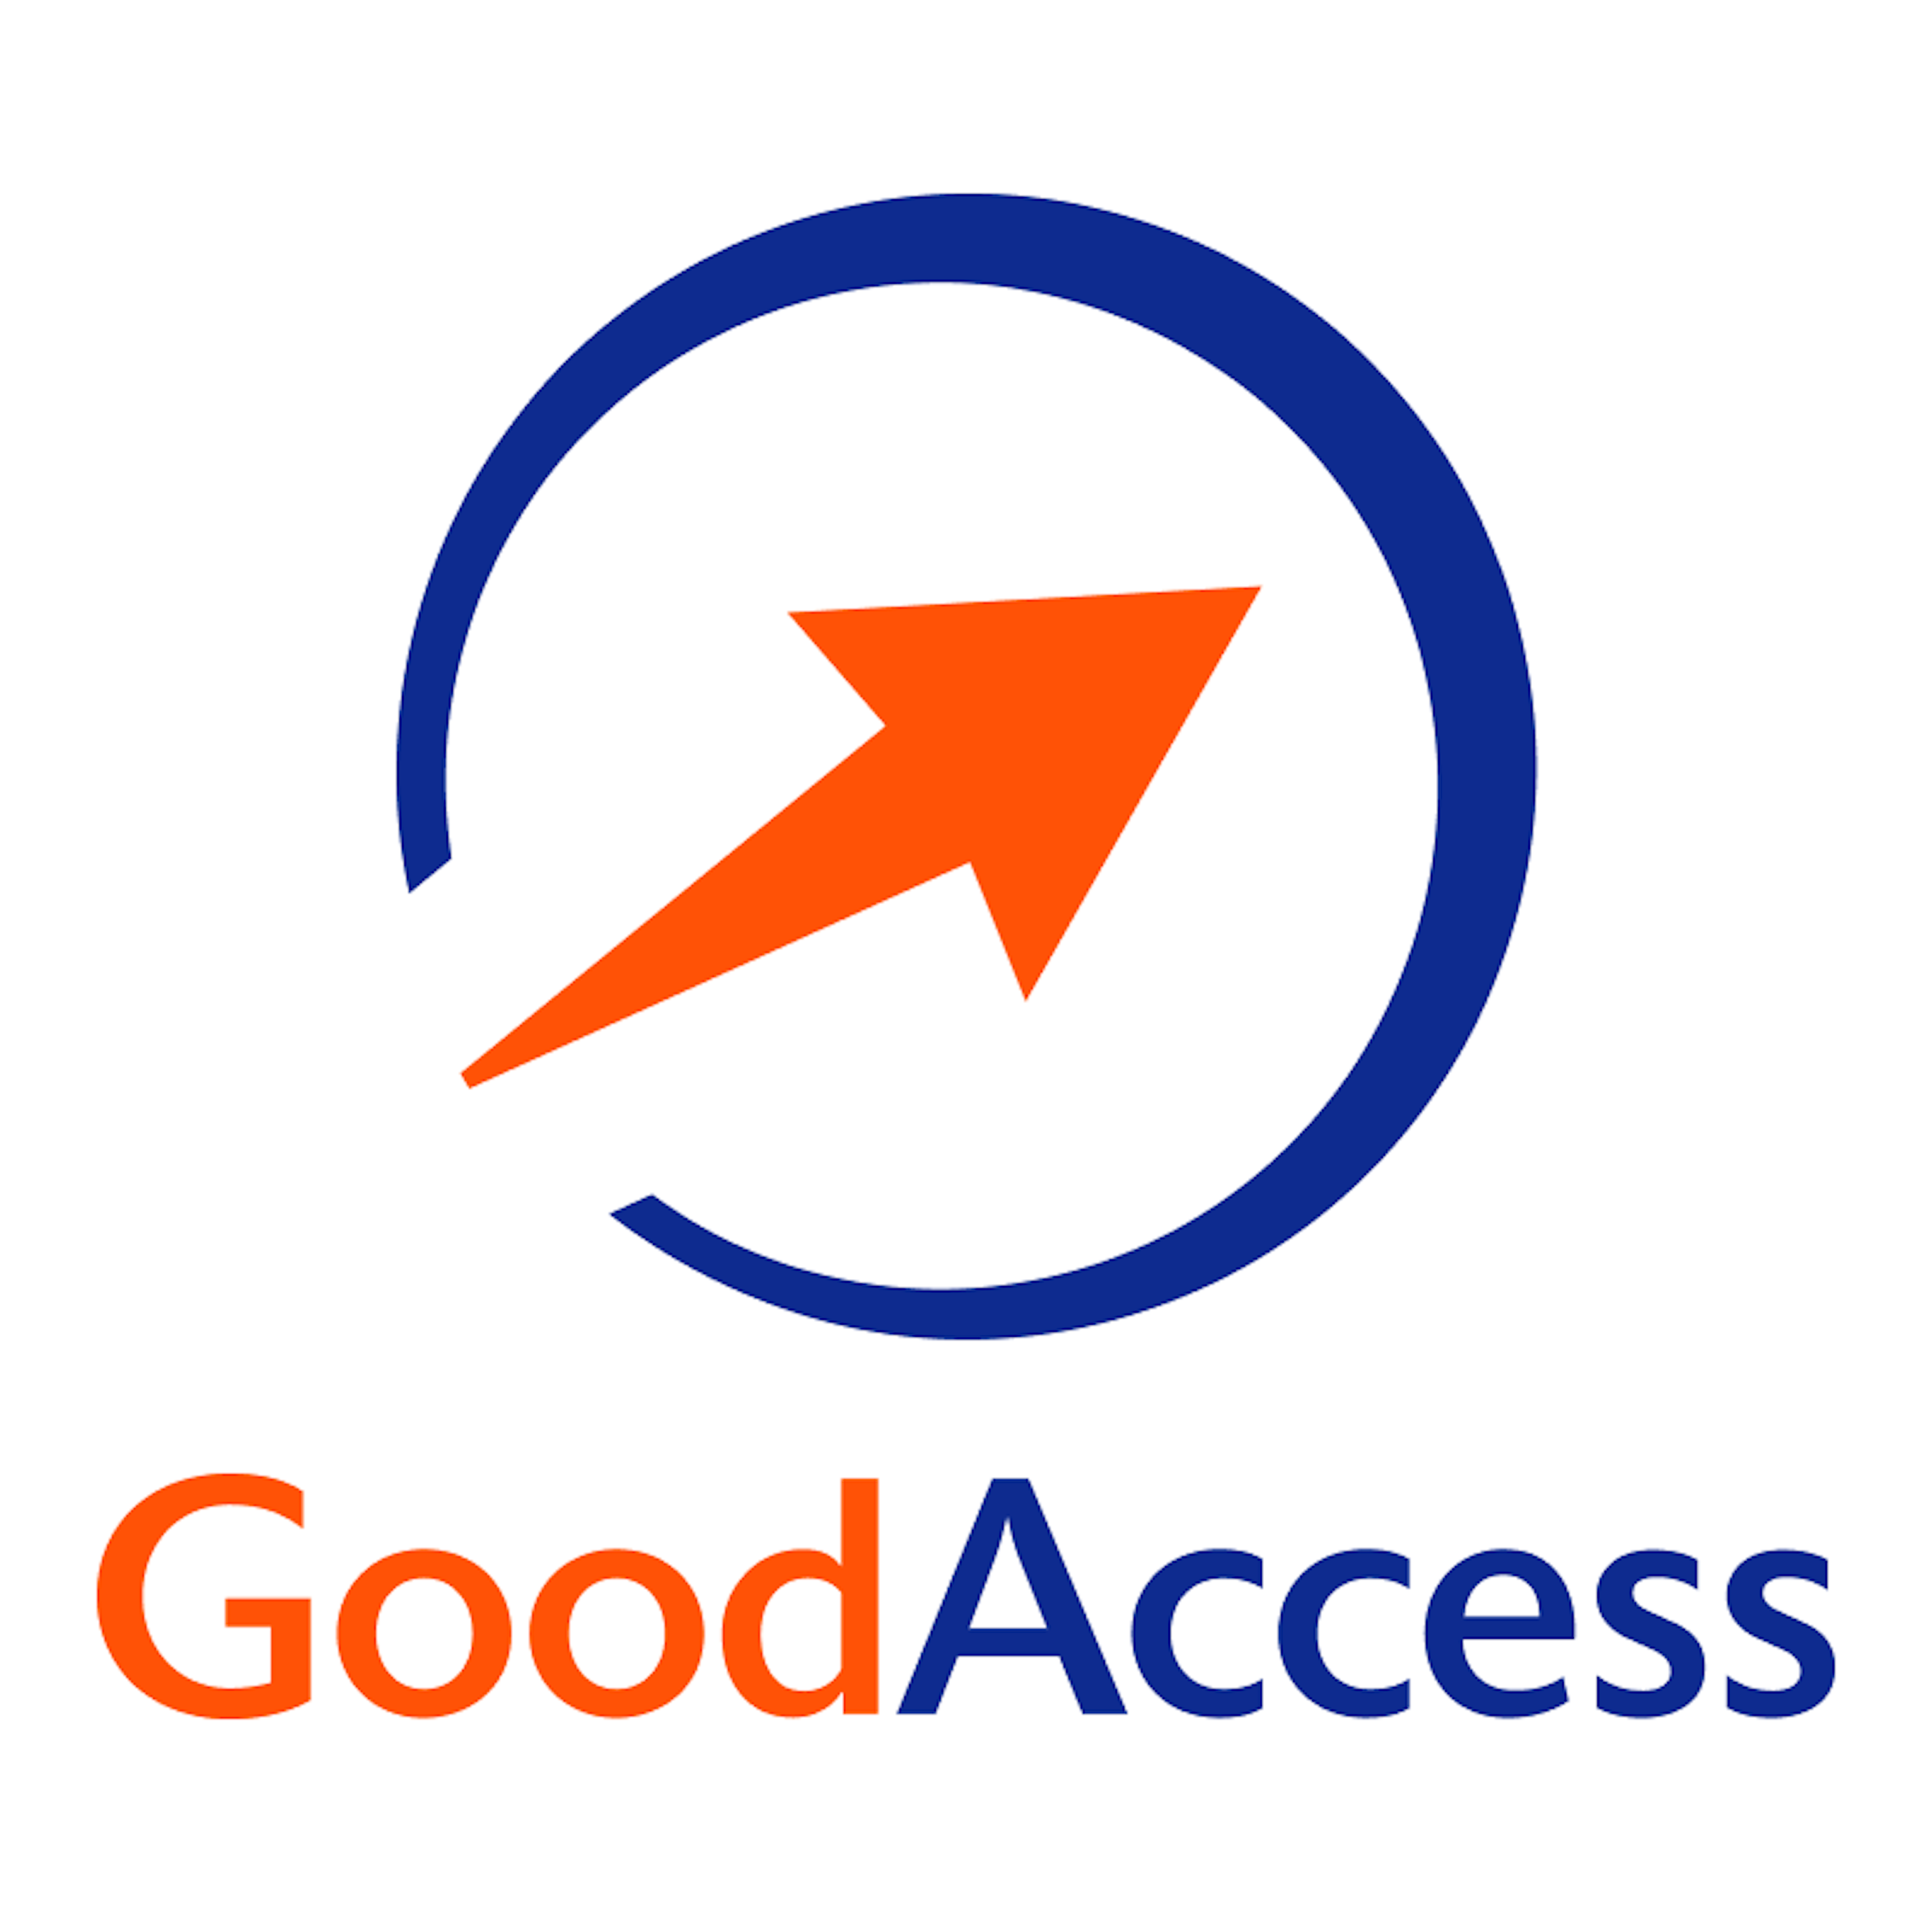 GoodAccess Logo